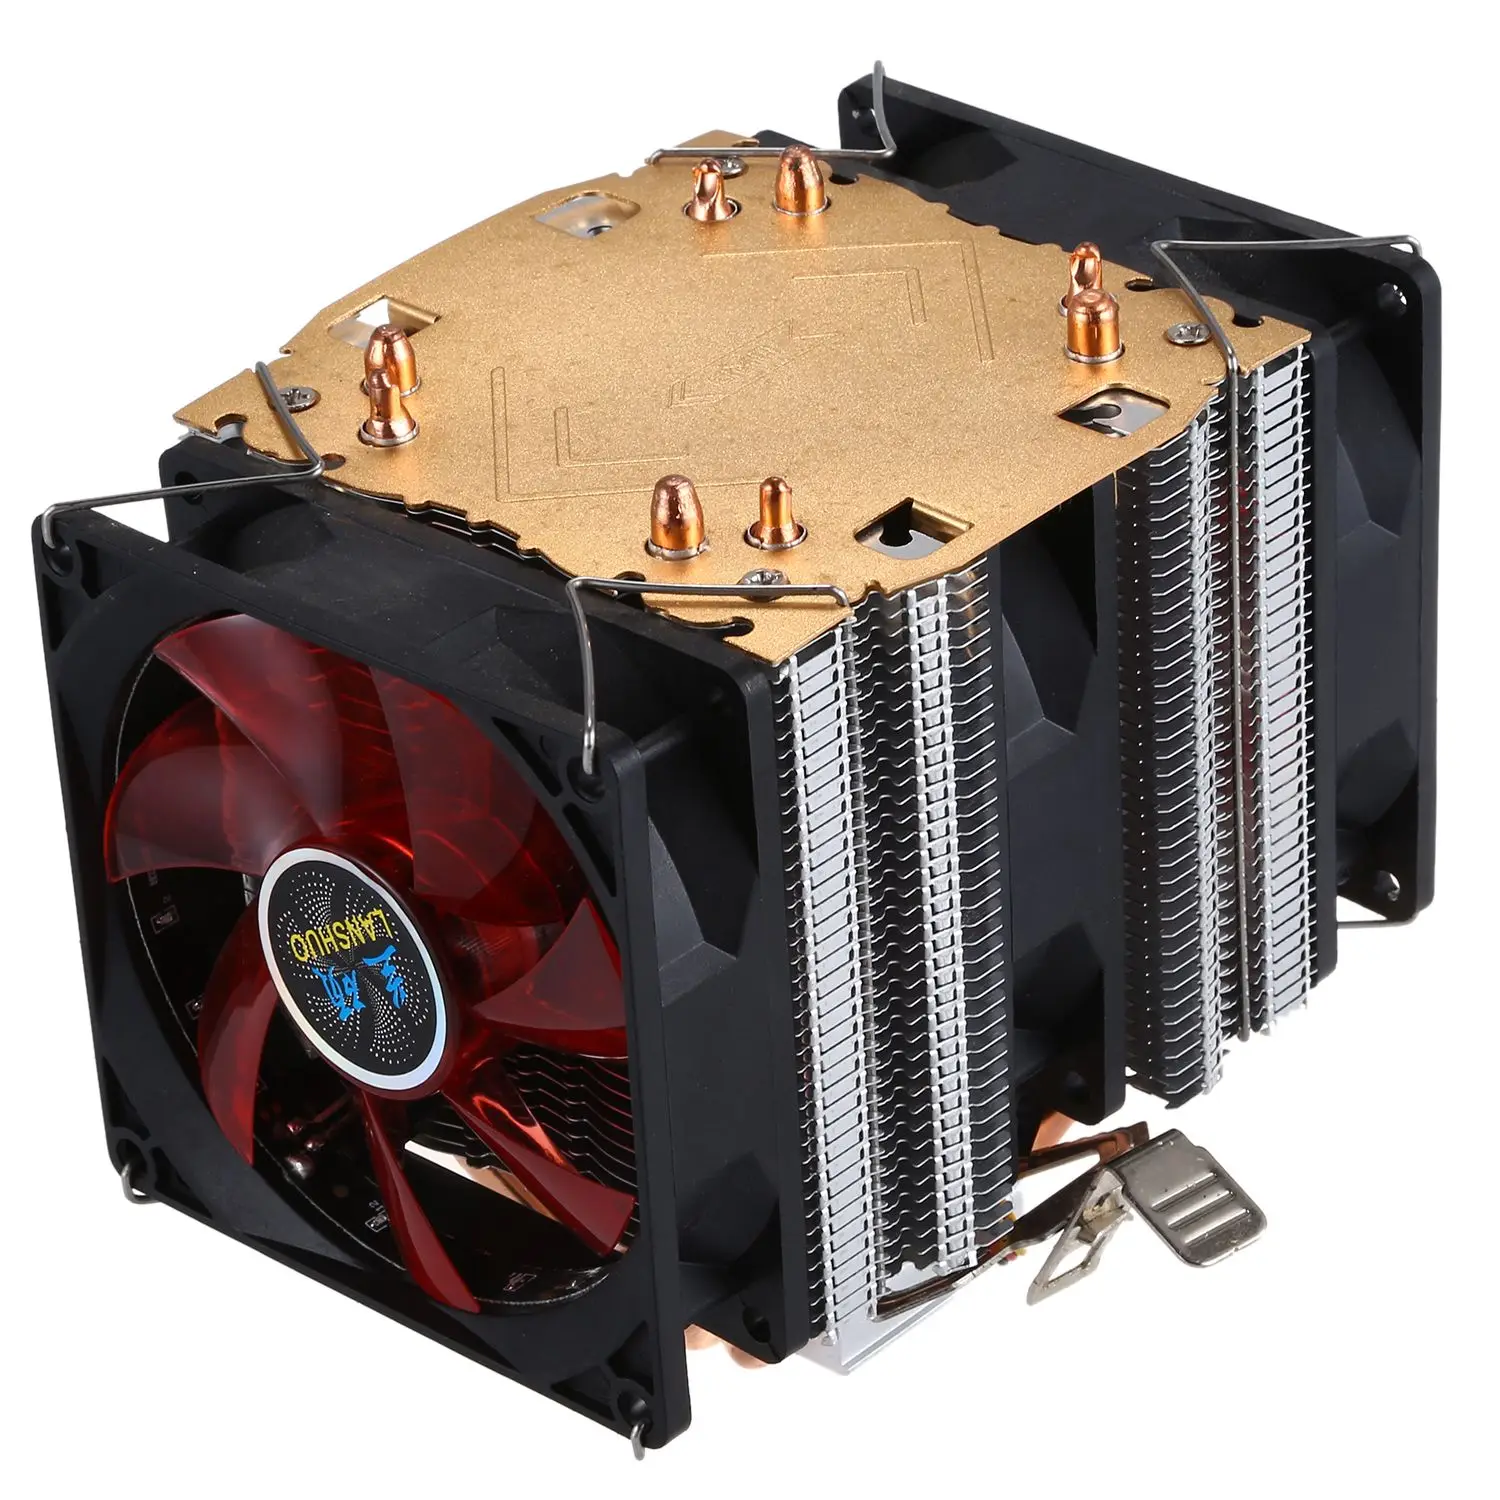 LANSHUO Чистая медь 4 тепловая труба для 775 1155 1366 Intel/AMD Многоплатформенный процессор радиатор 3 провода со светом три вентилятора (черный +